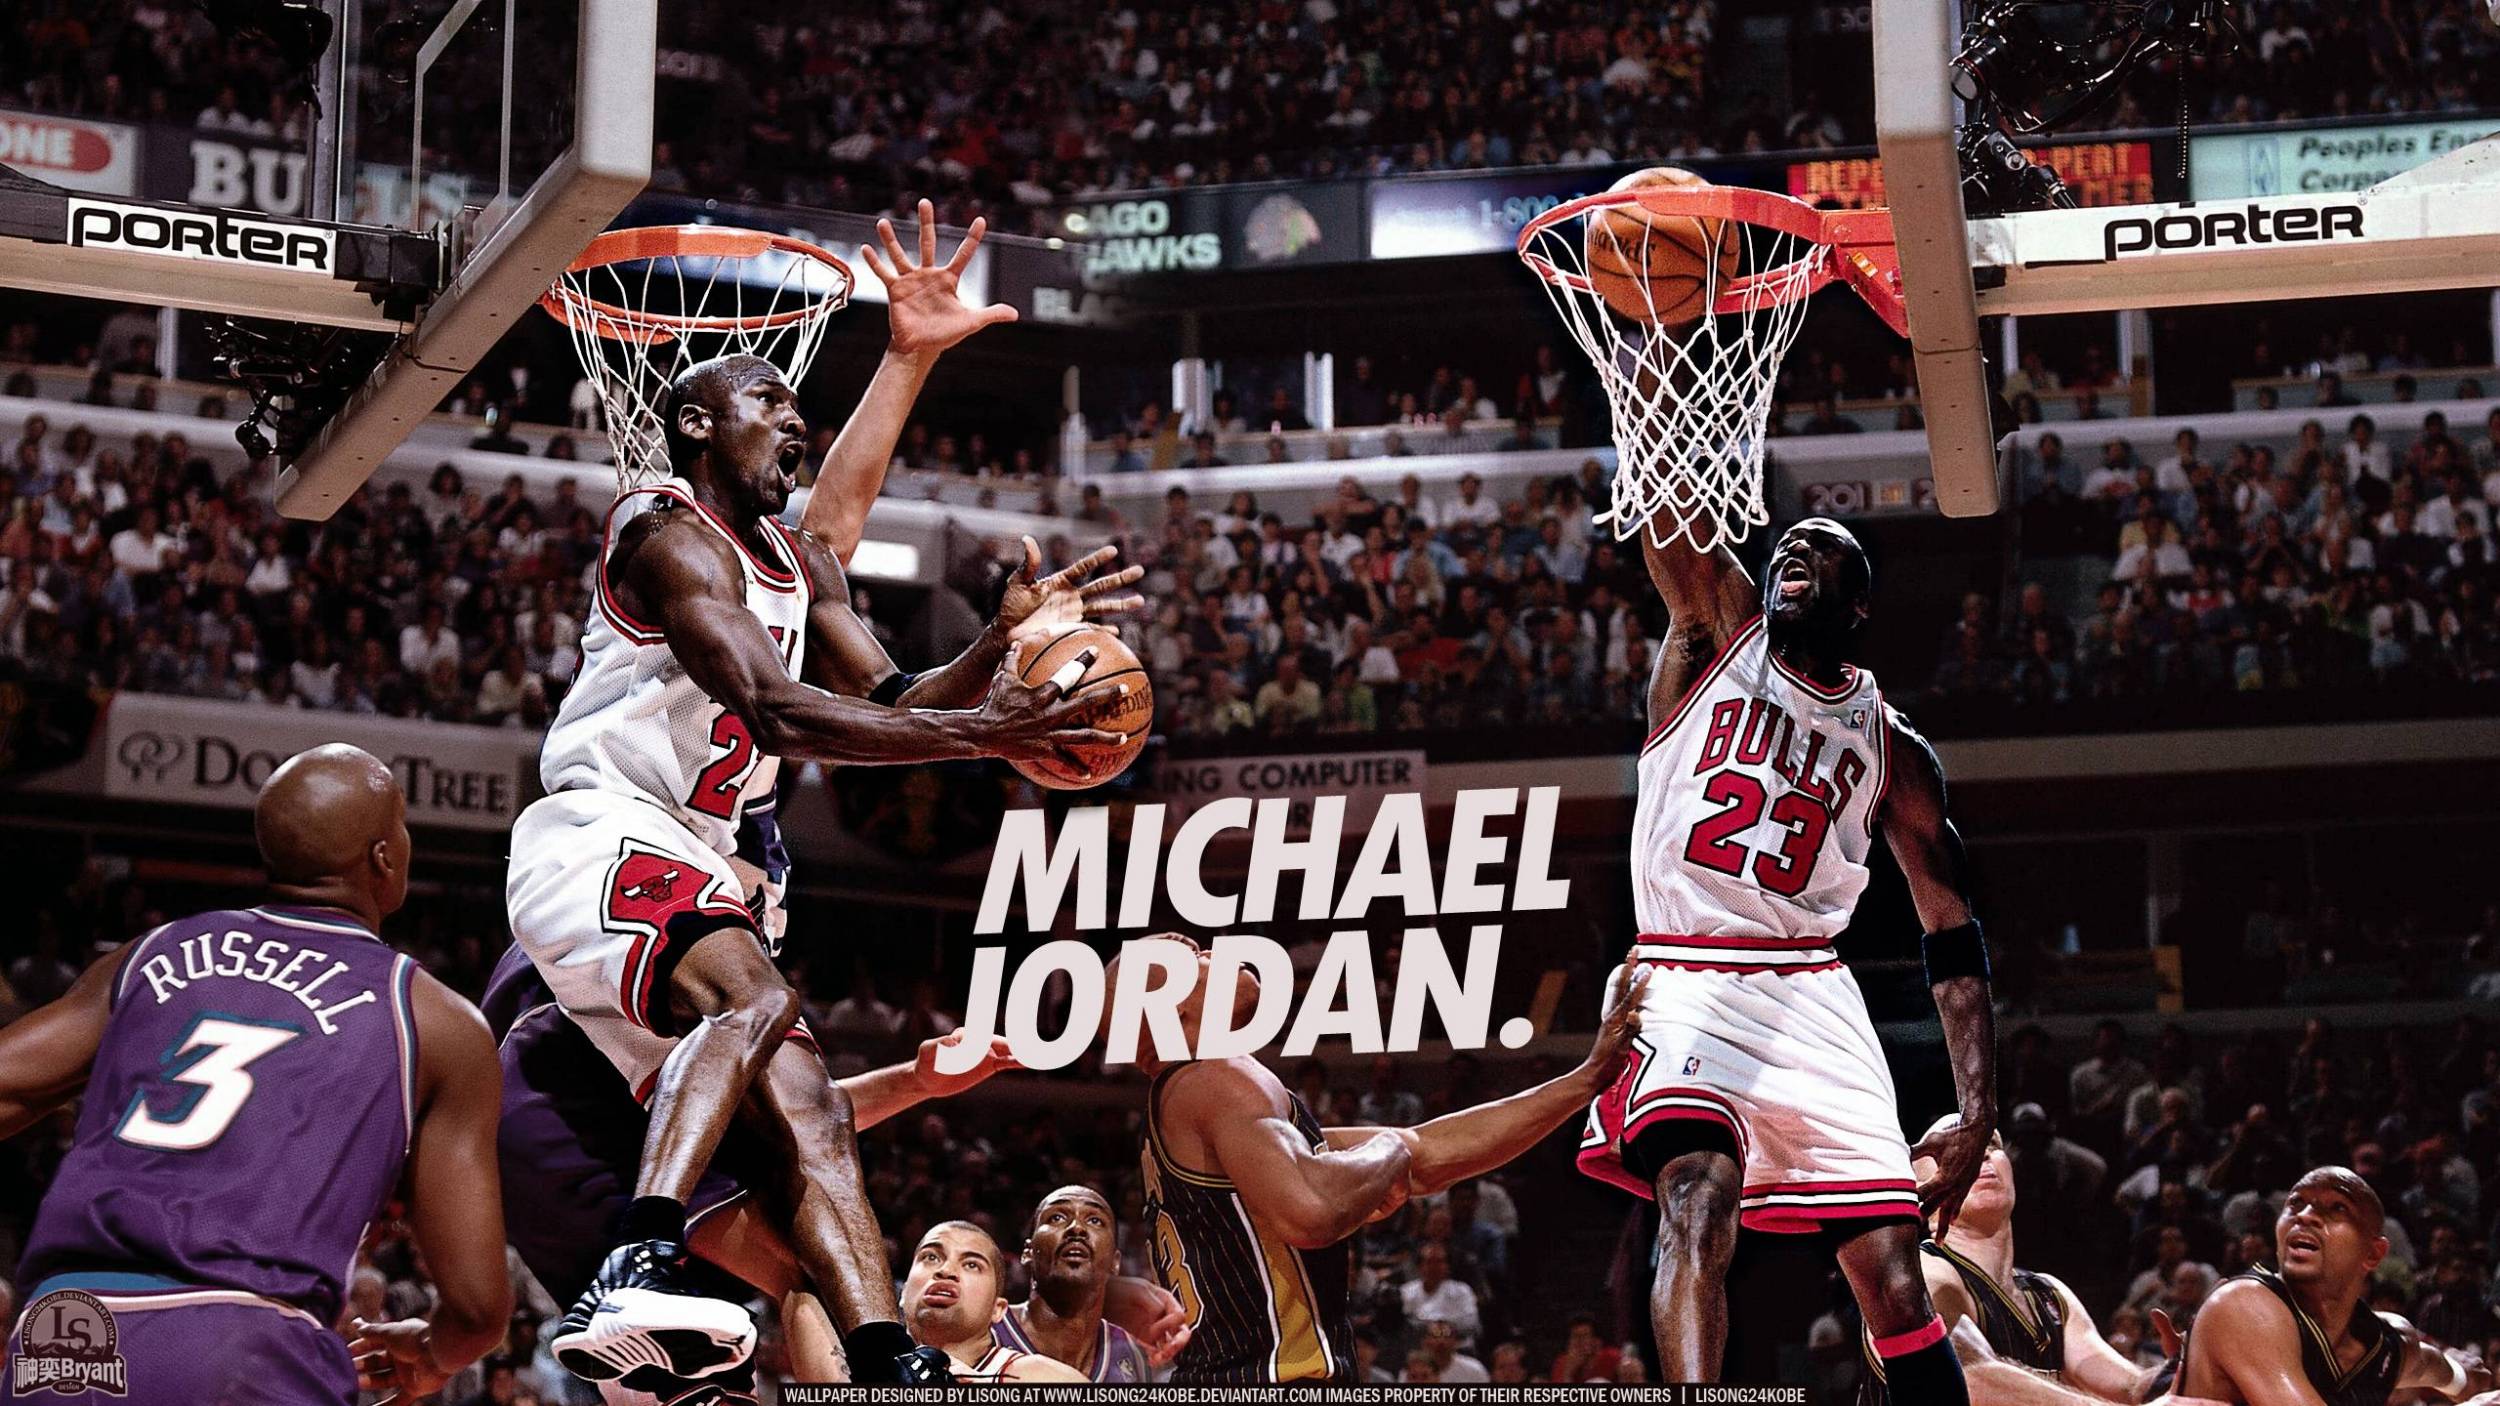 Michael Jordan Wallpaper for desktop and mobile